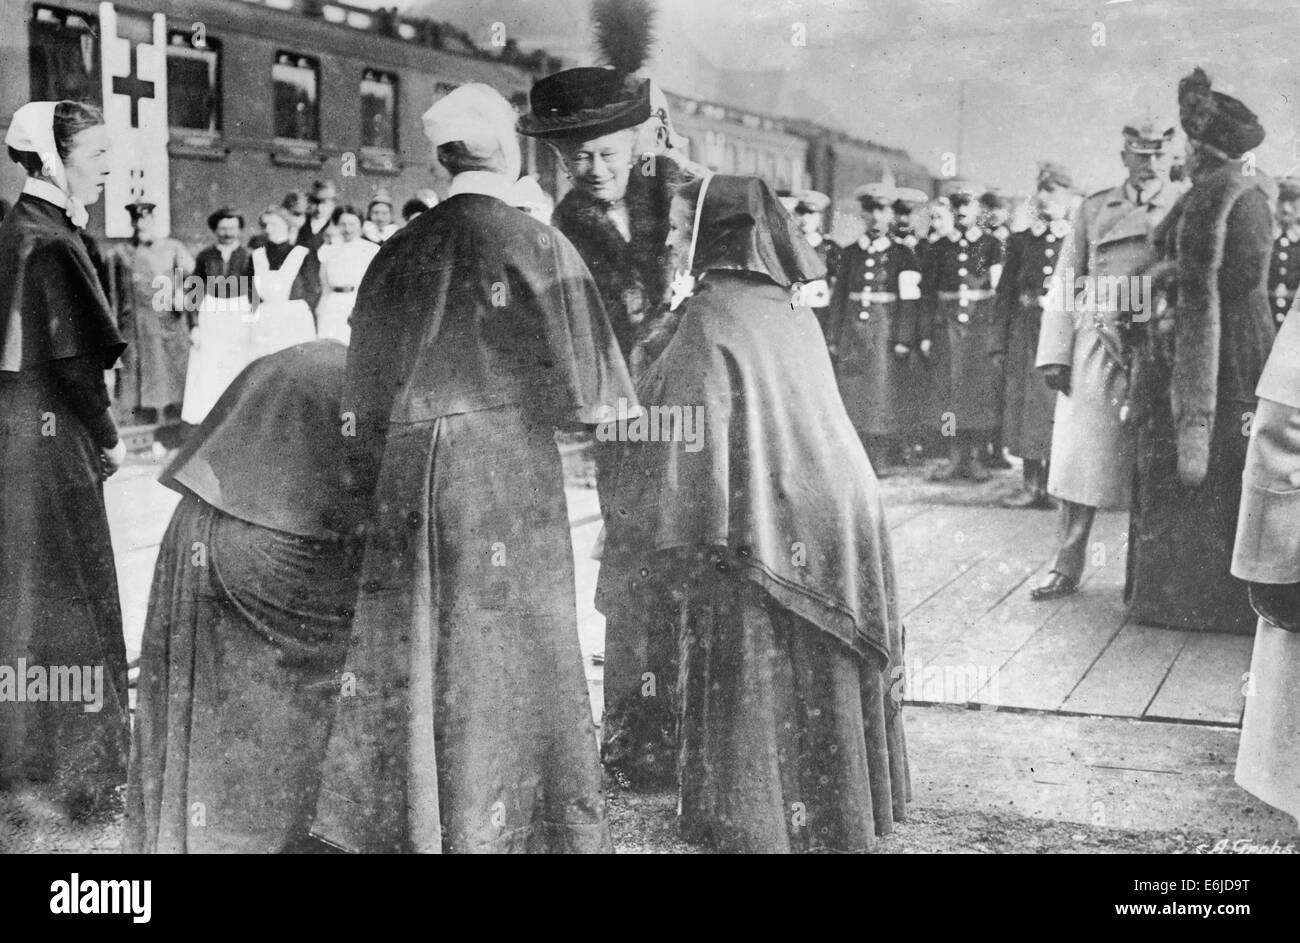 Le Kaiserin adieu à croix rouge, Soeurs - Kaiserin Augusta Victoria de Schleswig-Holstein (1858-1921), épouse de Guillaume II d'Allemagne, à une station de train avec des religieuses au cours de la Première Guerre mondiale, vers 1915 Banque D'Images